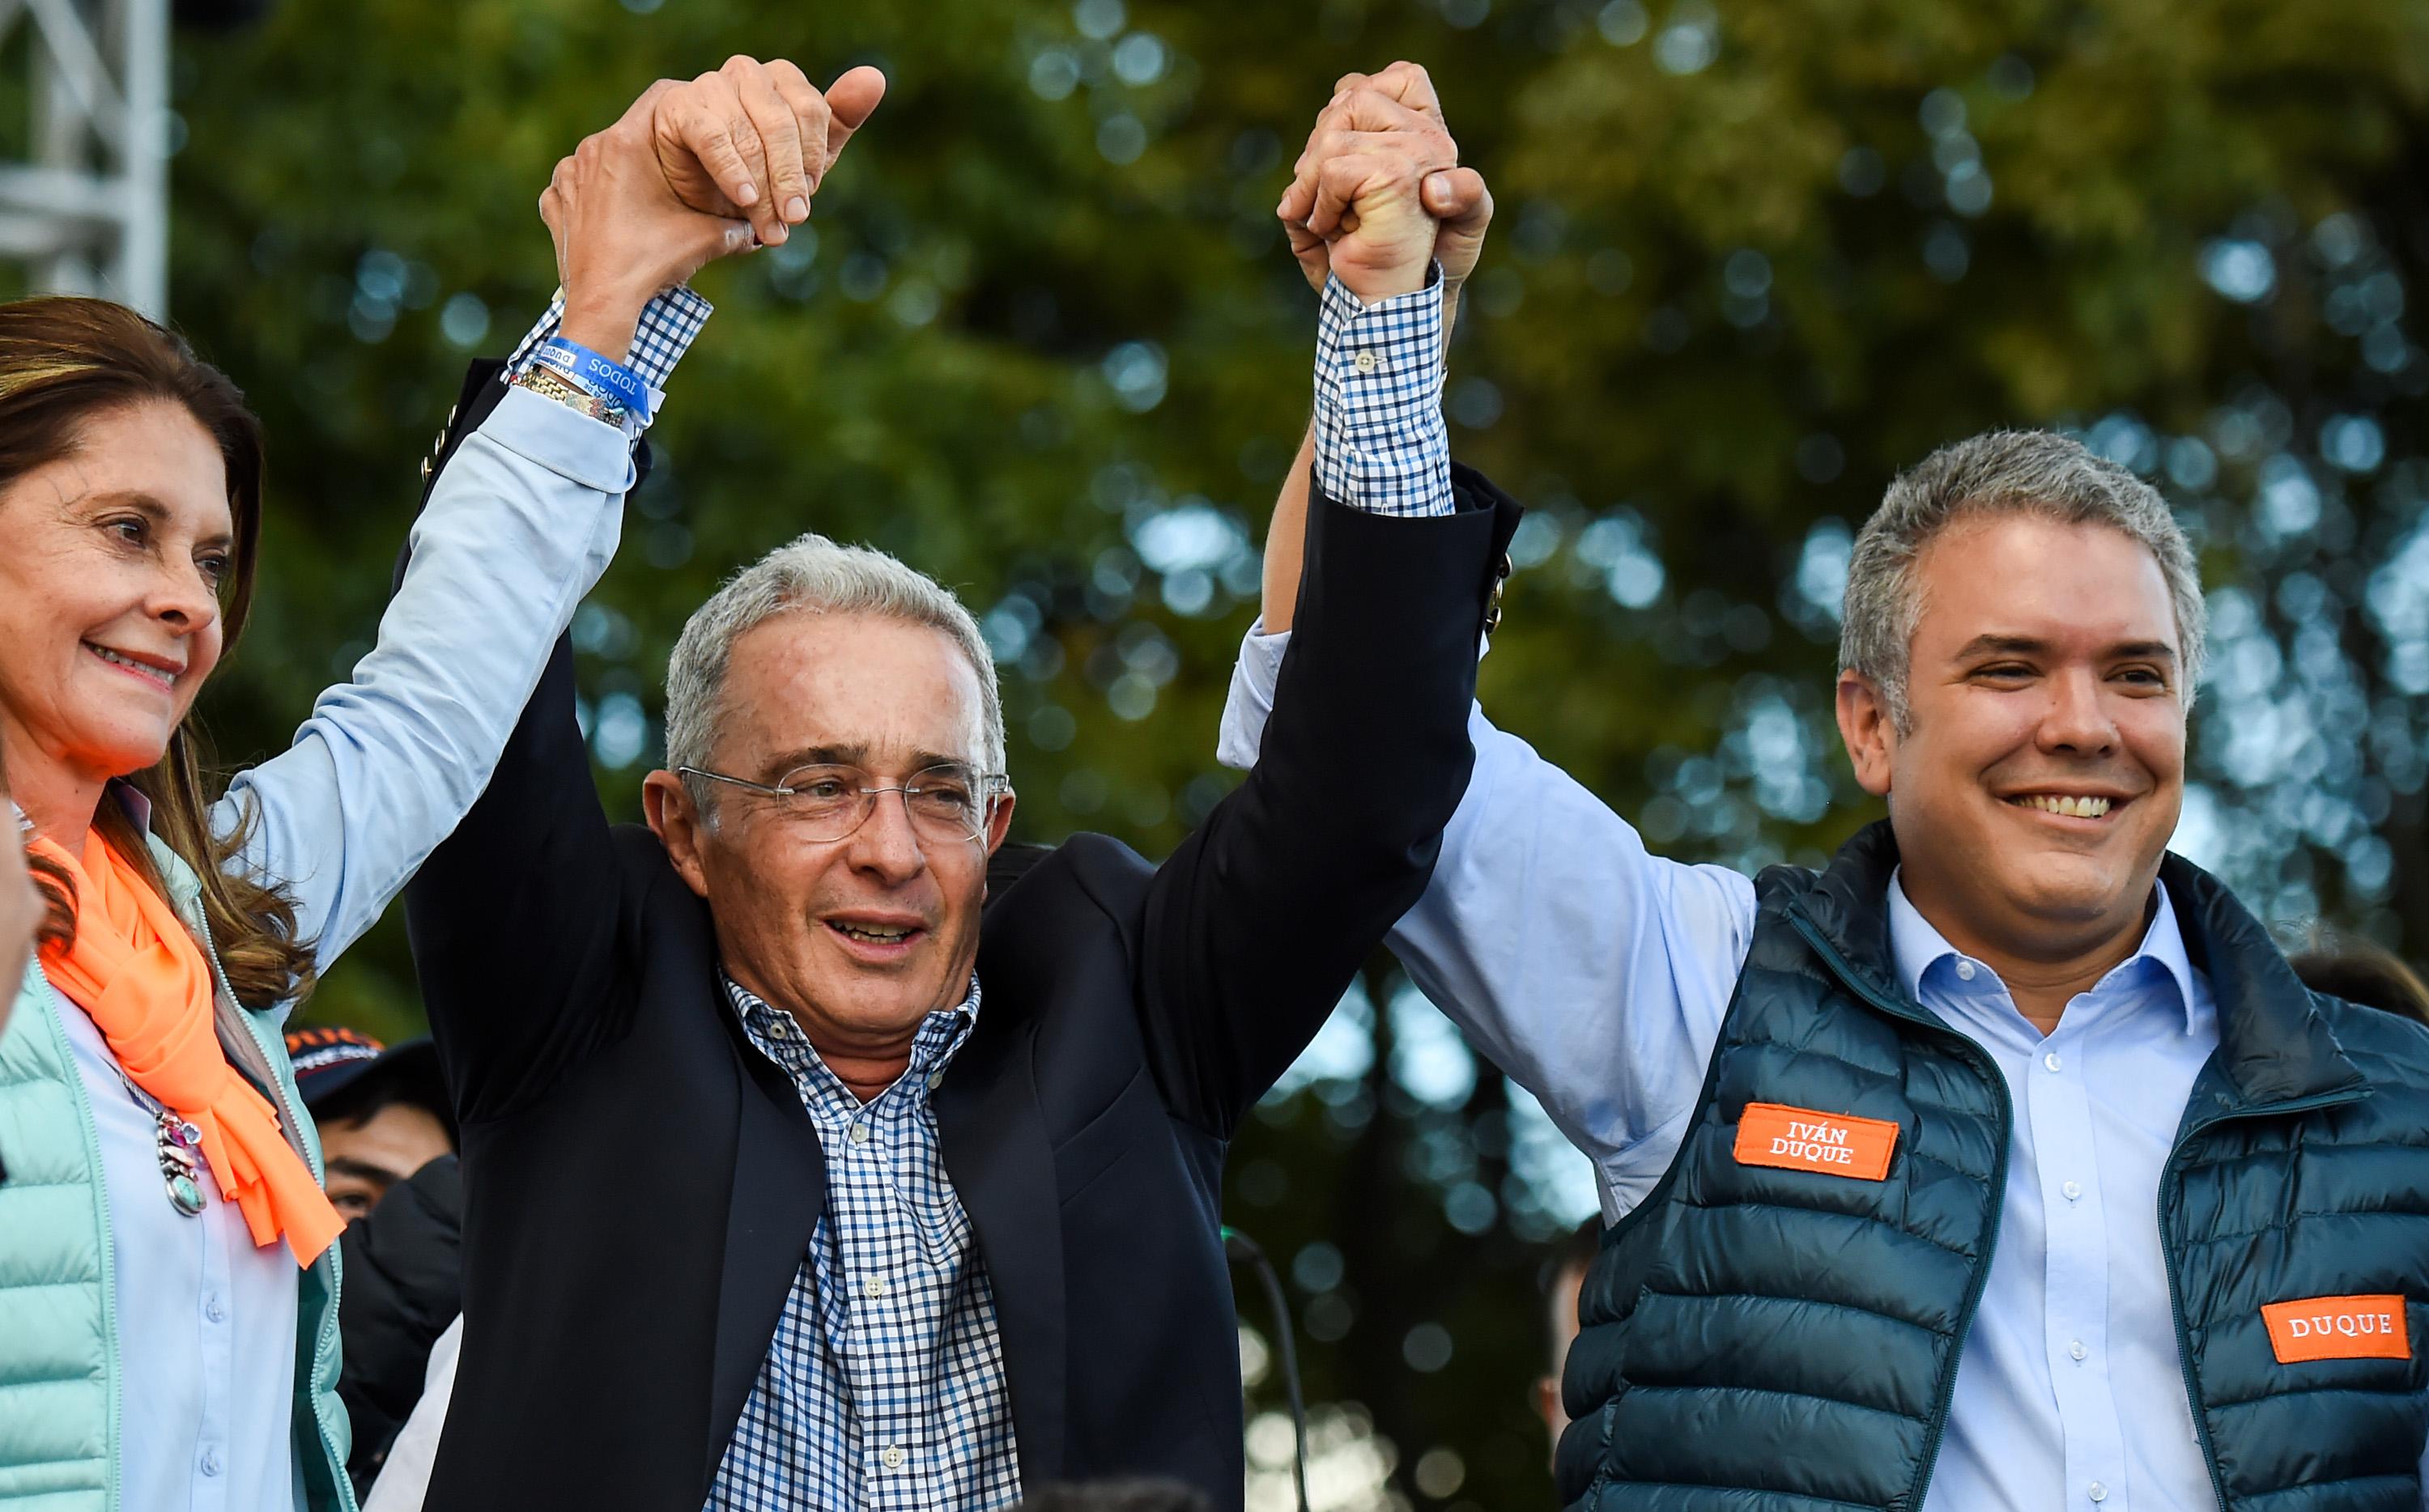 El expresidente de Colombia Álvaro Uribe (centro) alza la mano del presidente electo Iván Duque, del Centro Democrático, en un mitin del 20 de mayo de 2018. Uribe se alejó de eventos públicos con Duque en la última parte de la campaña. Foto AFP/ Raul Arboleda